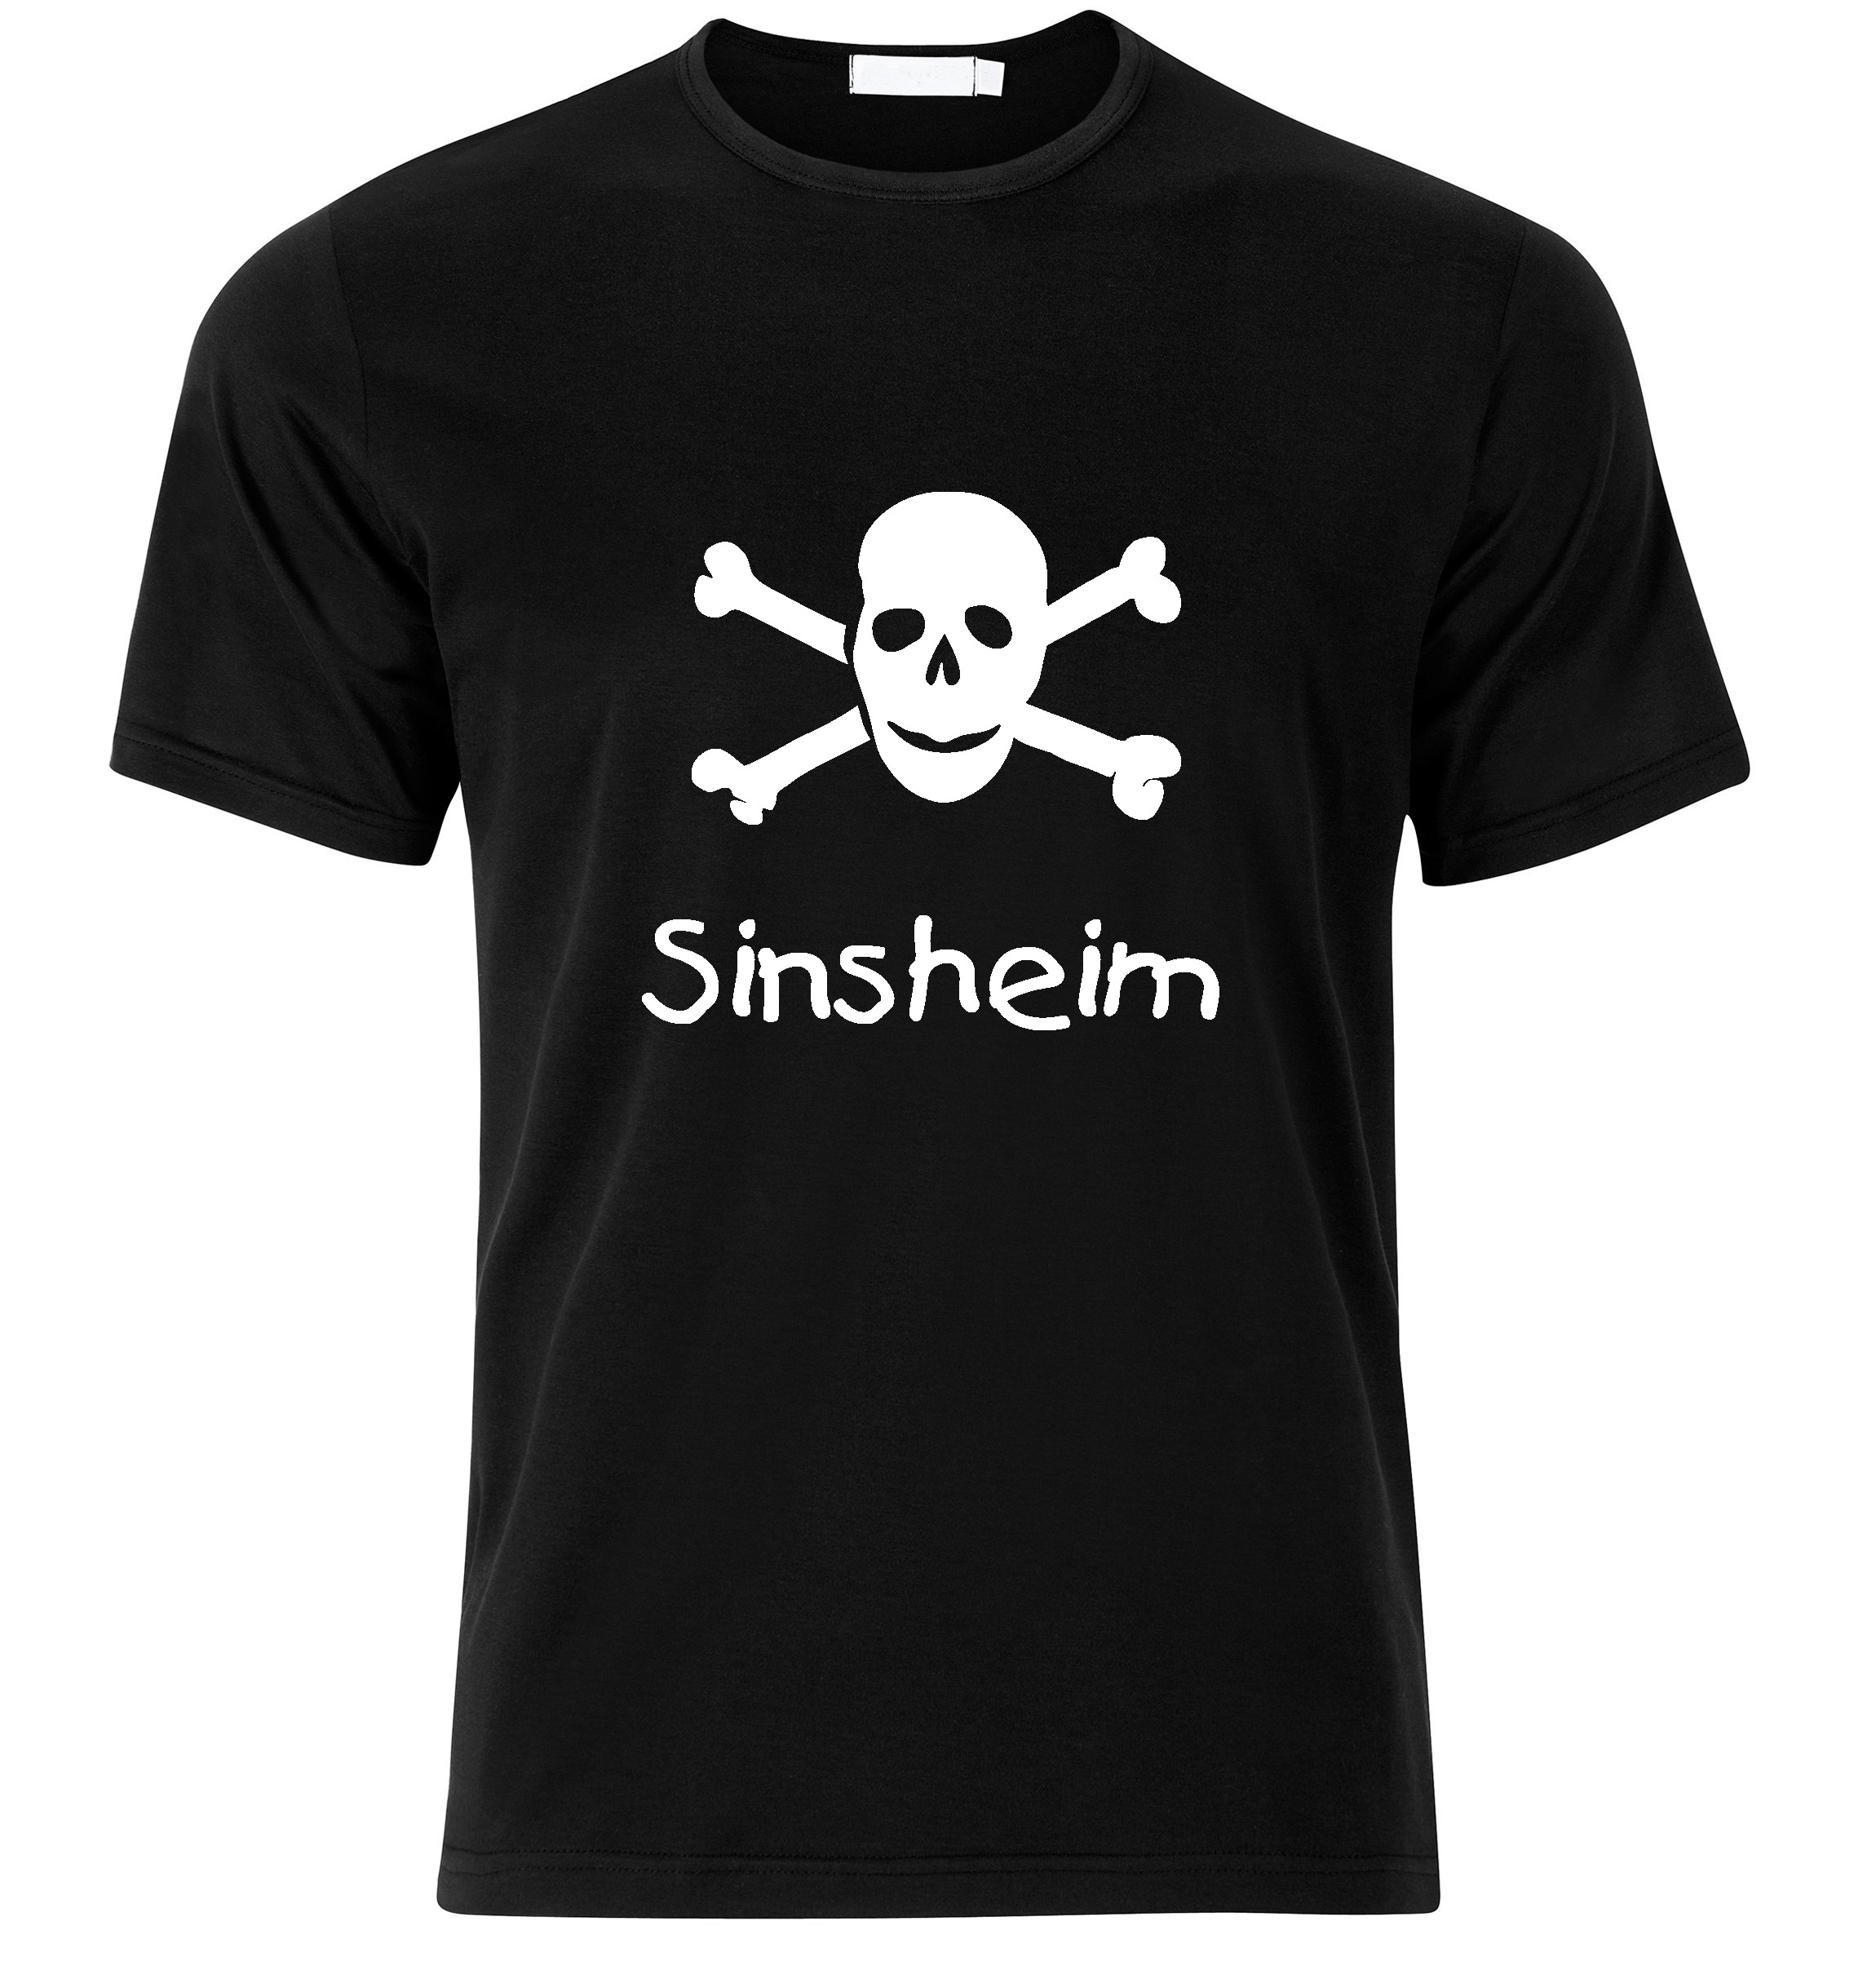 T-Shirt Sinsheim Jolly Roger, Totenkopf